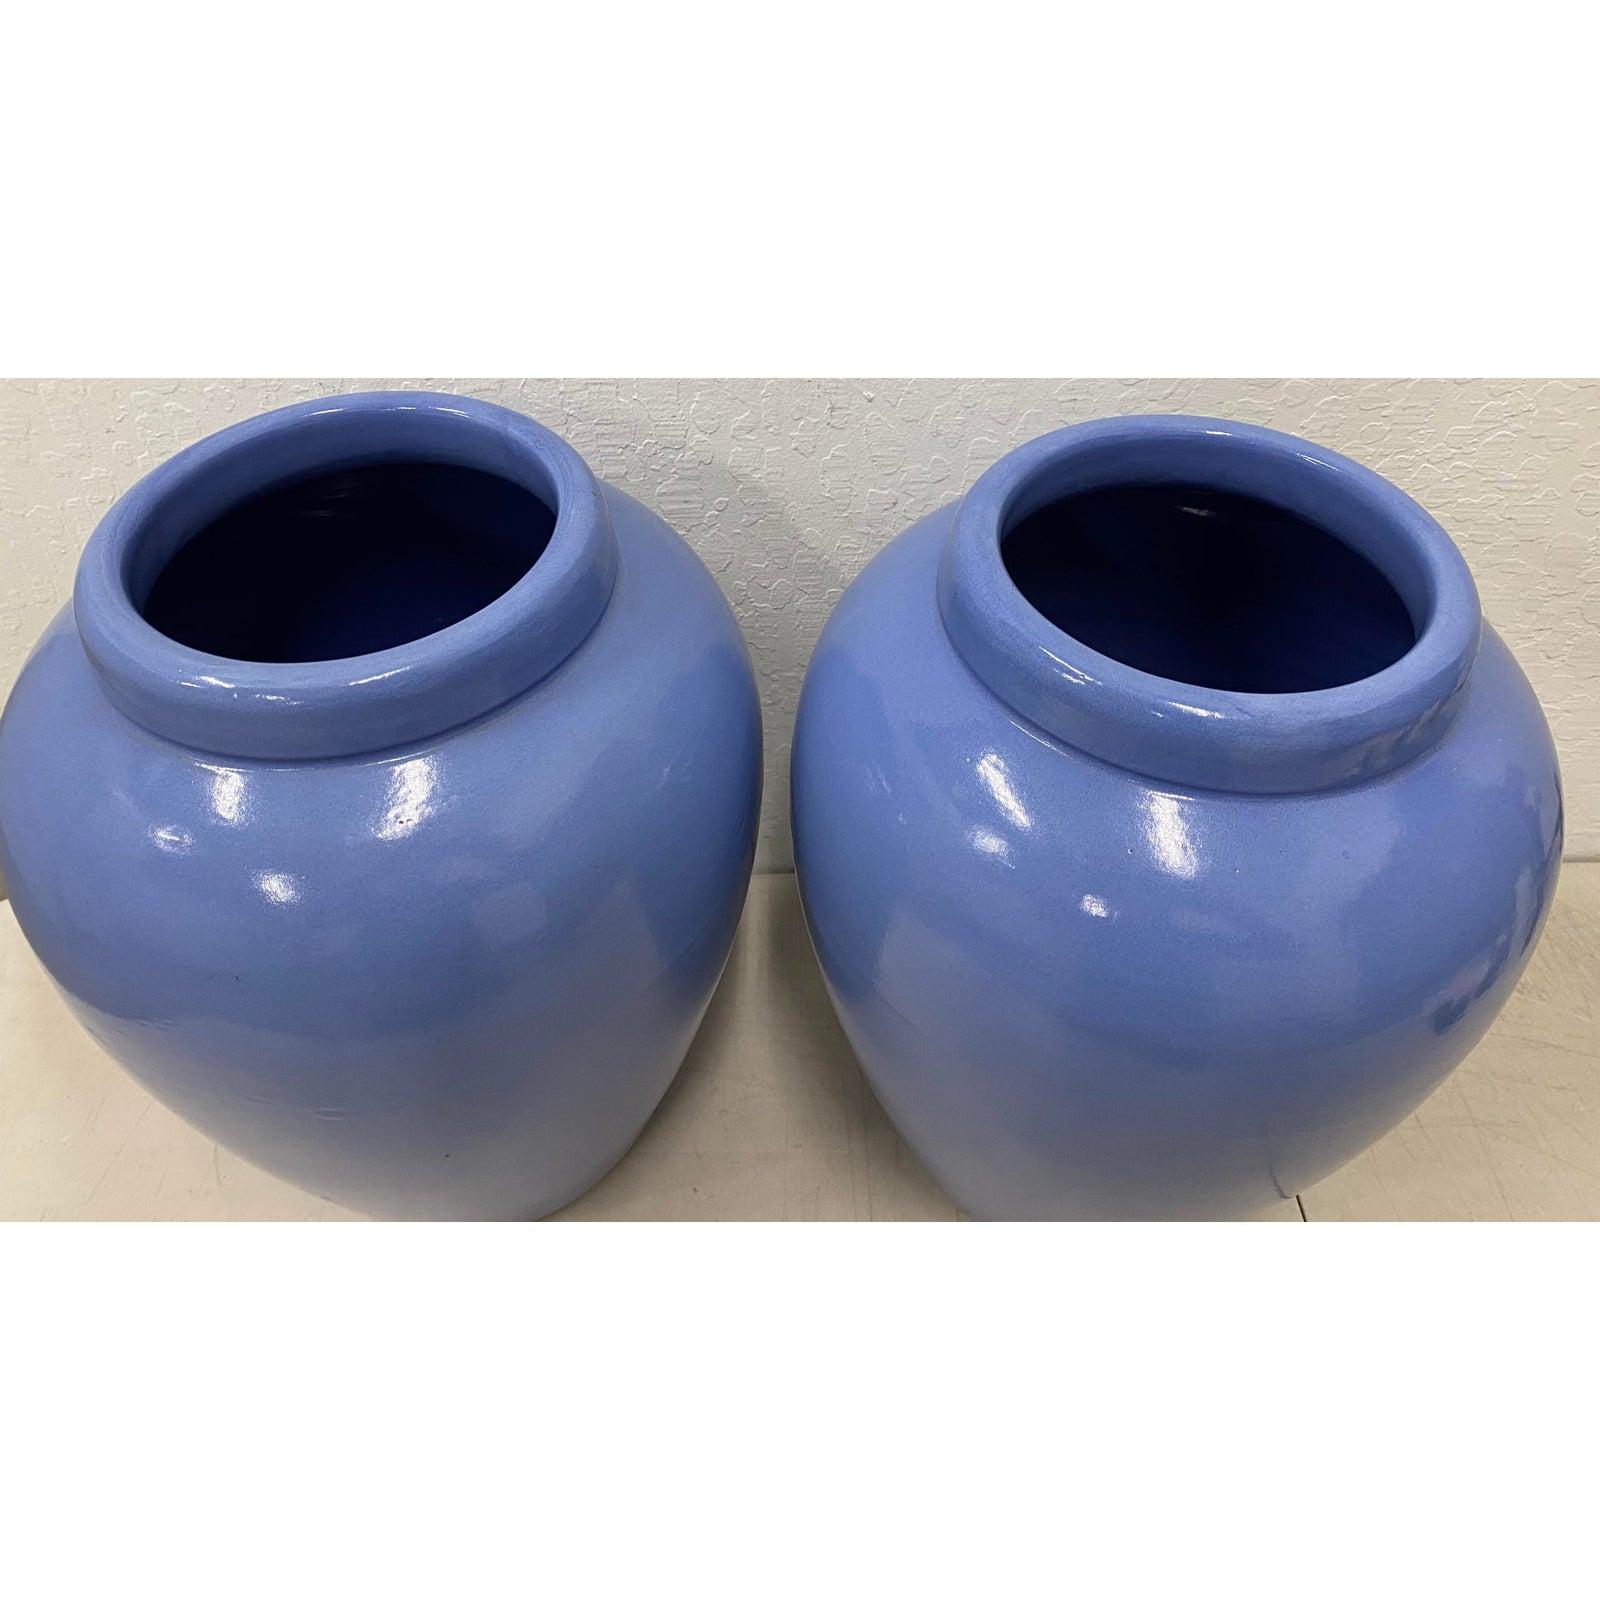 Pair of vintage cornflower blue oil storage jars, circa 1930

Dimensions 8